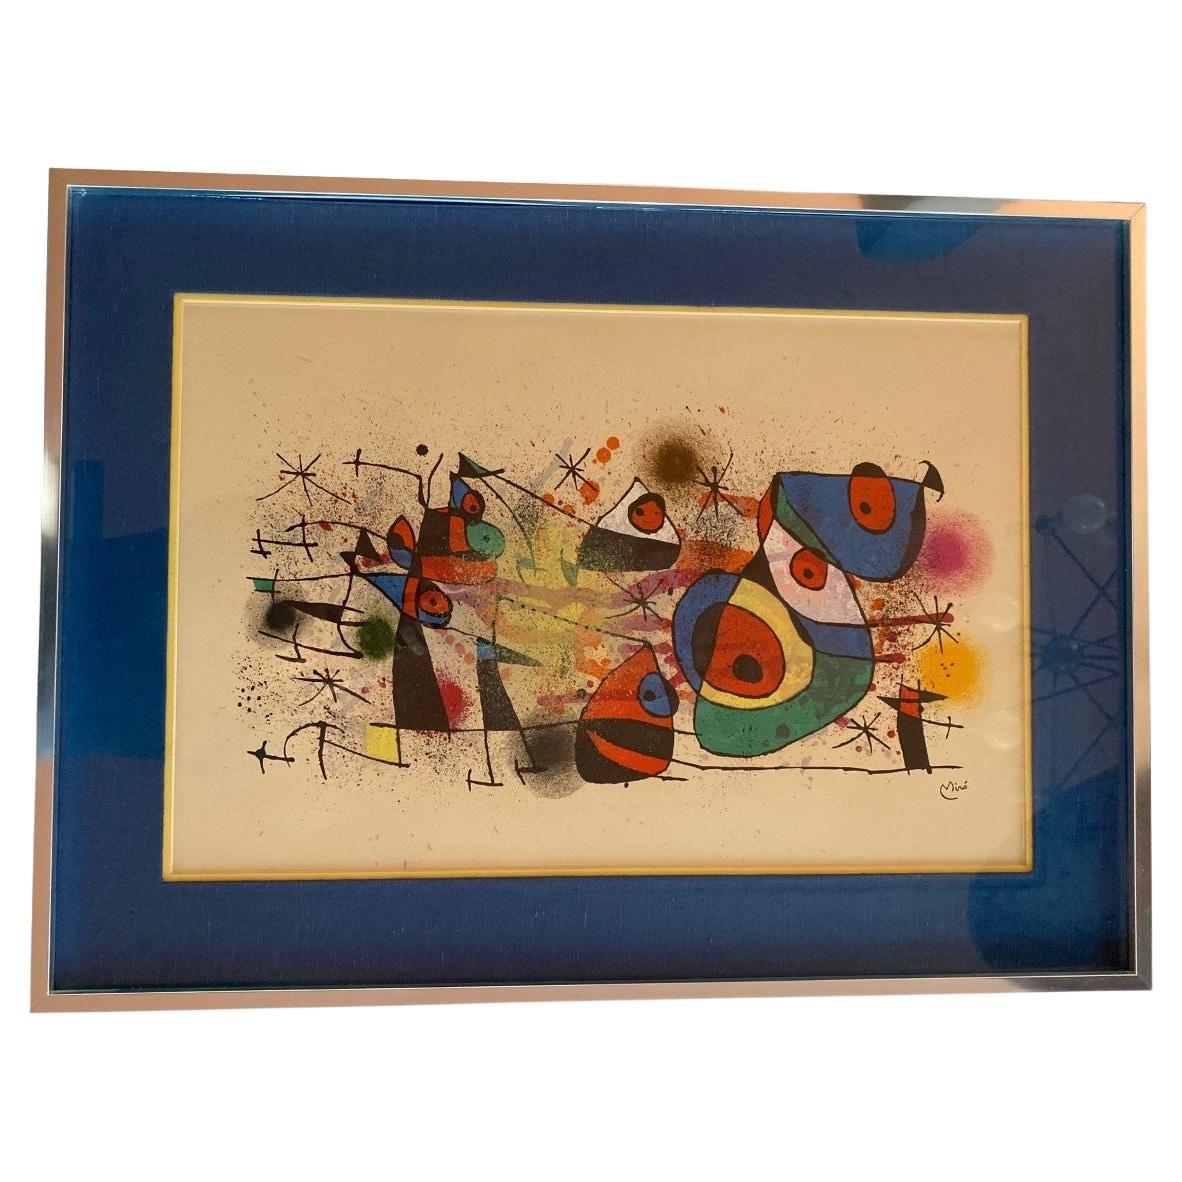 Original Lithograph Joan Miró, Ceramiques, 1974